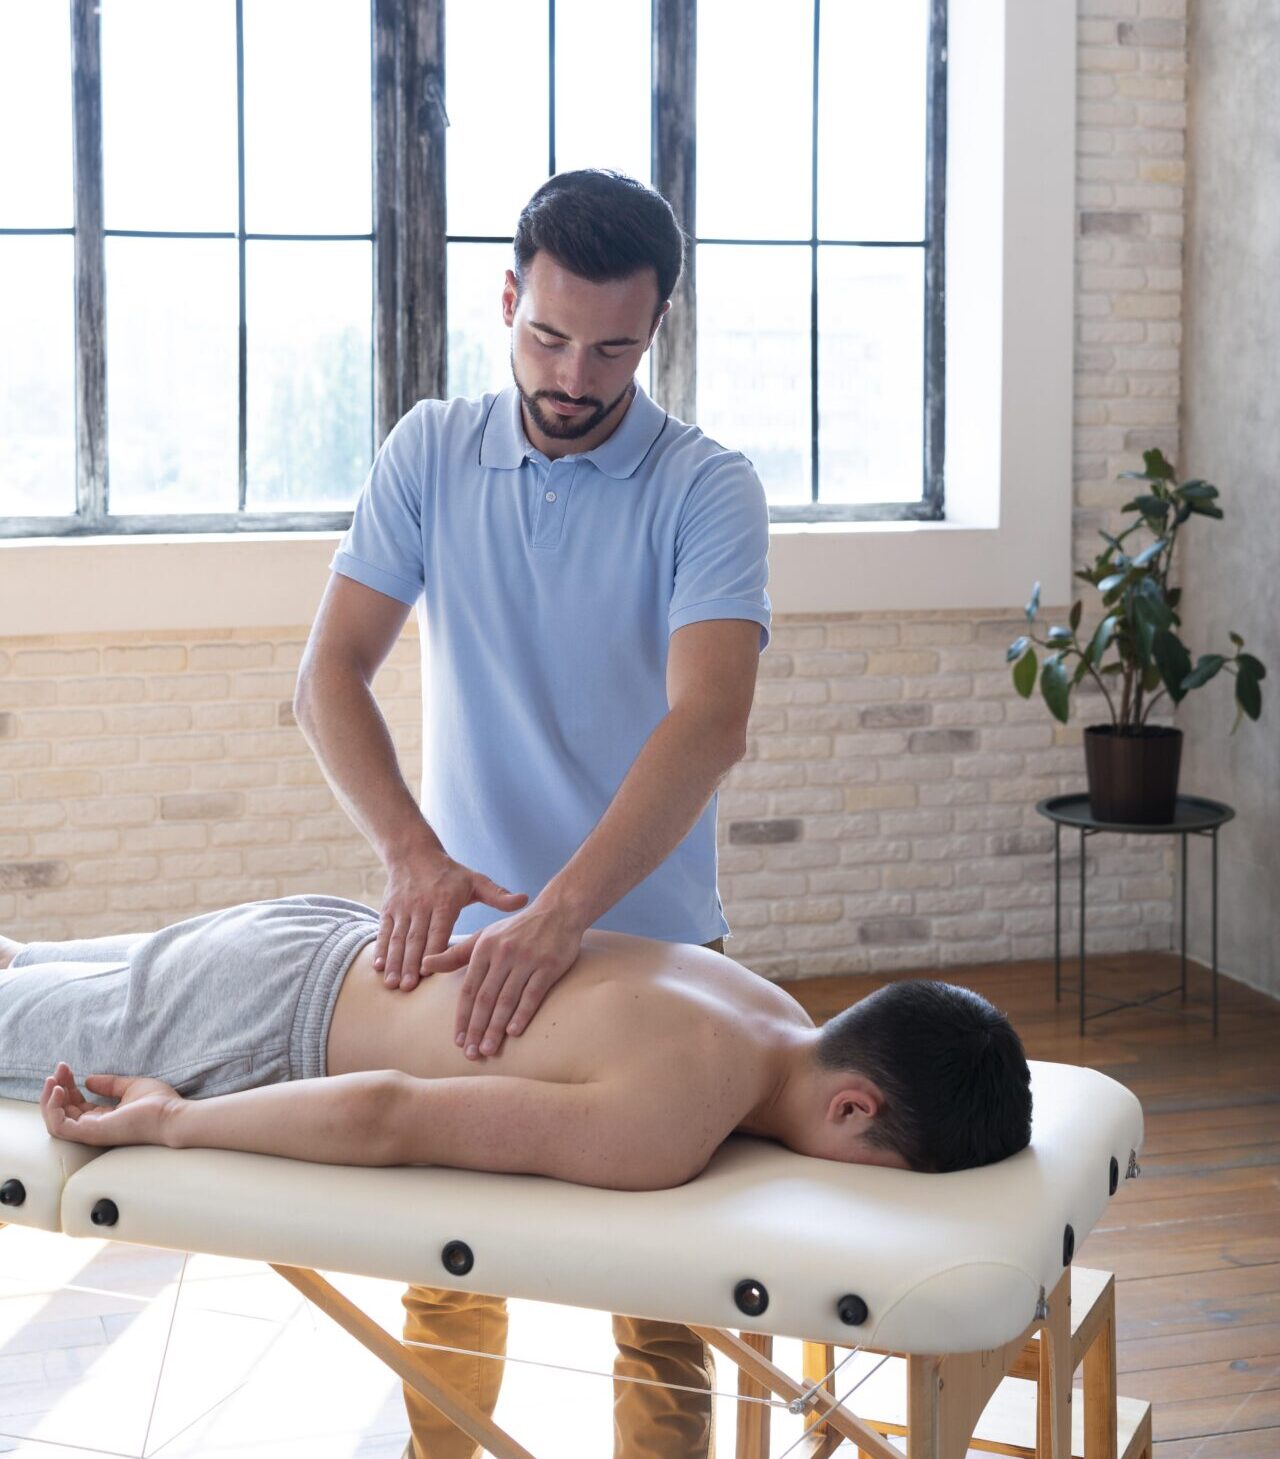 Fizjoterapeuta masażysta wykonuje masaż klasyczny pleców pacjentowi leżącego na leżance